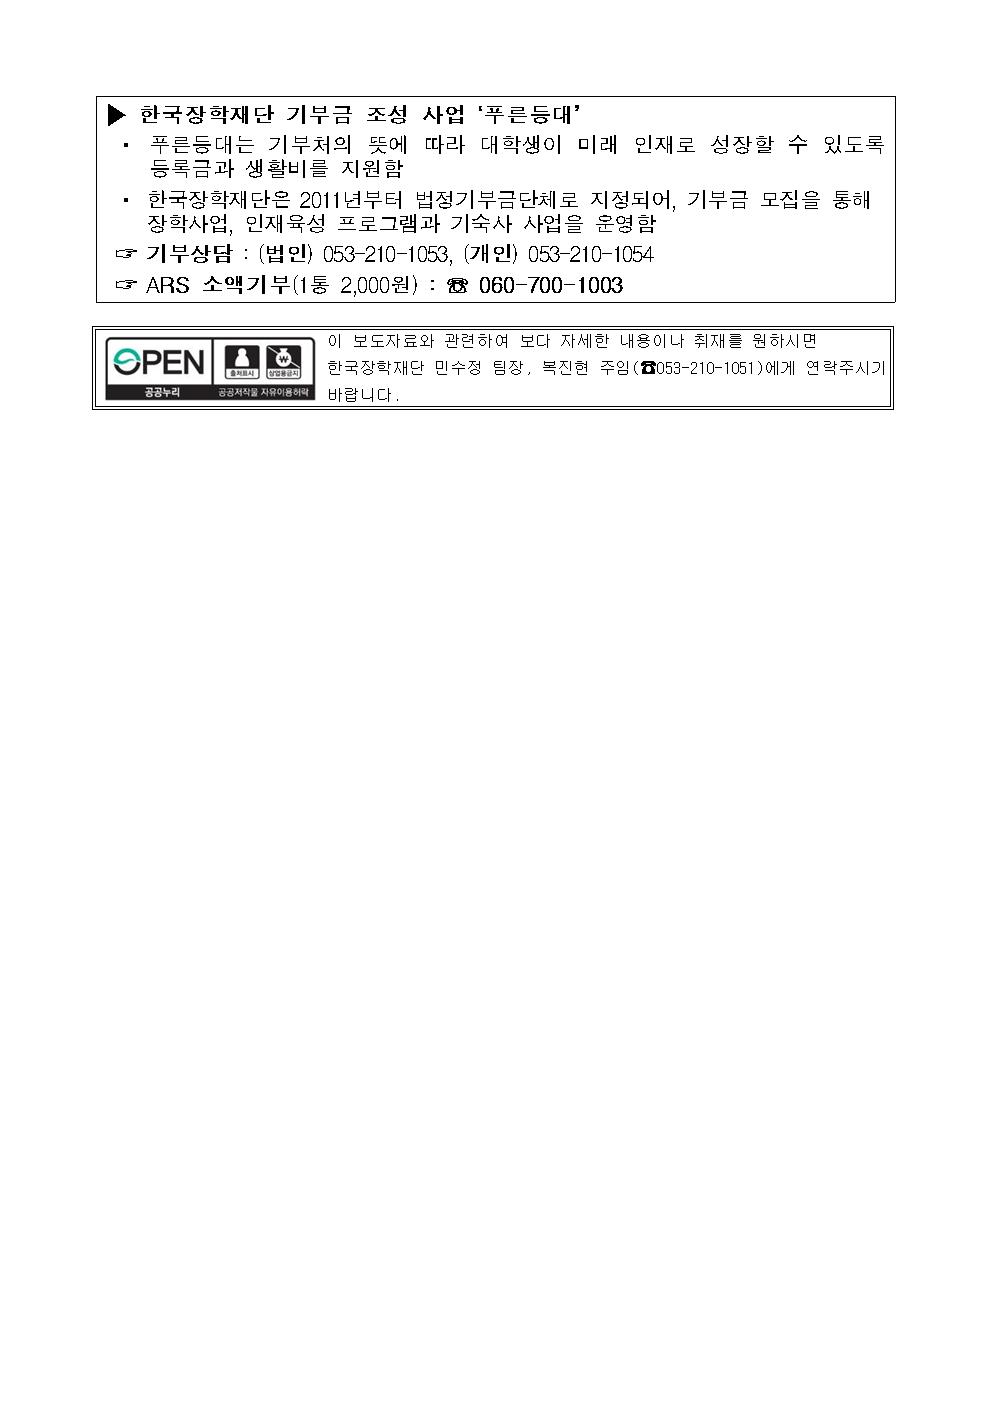 05-15(금)[보도자료] 한국화웨이, 한국장학재단 푸른등대 기부장학금 1억 원 기부003.jpg